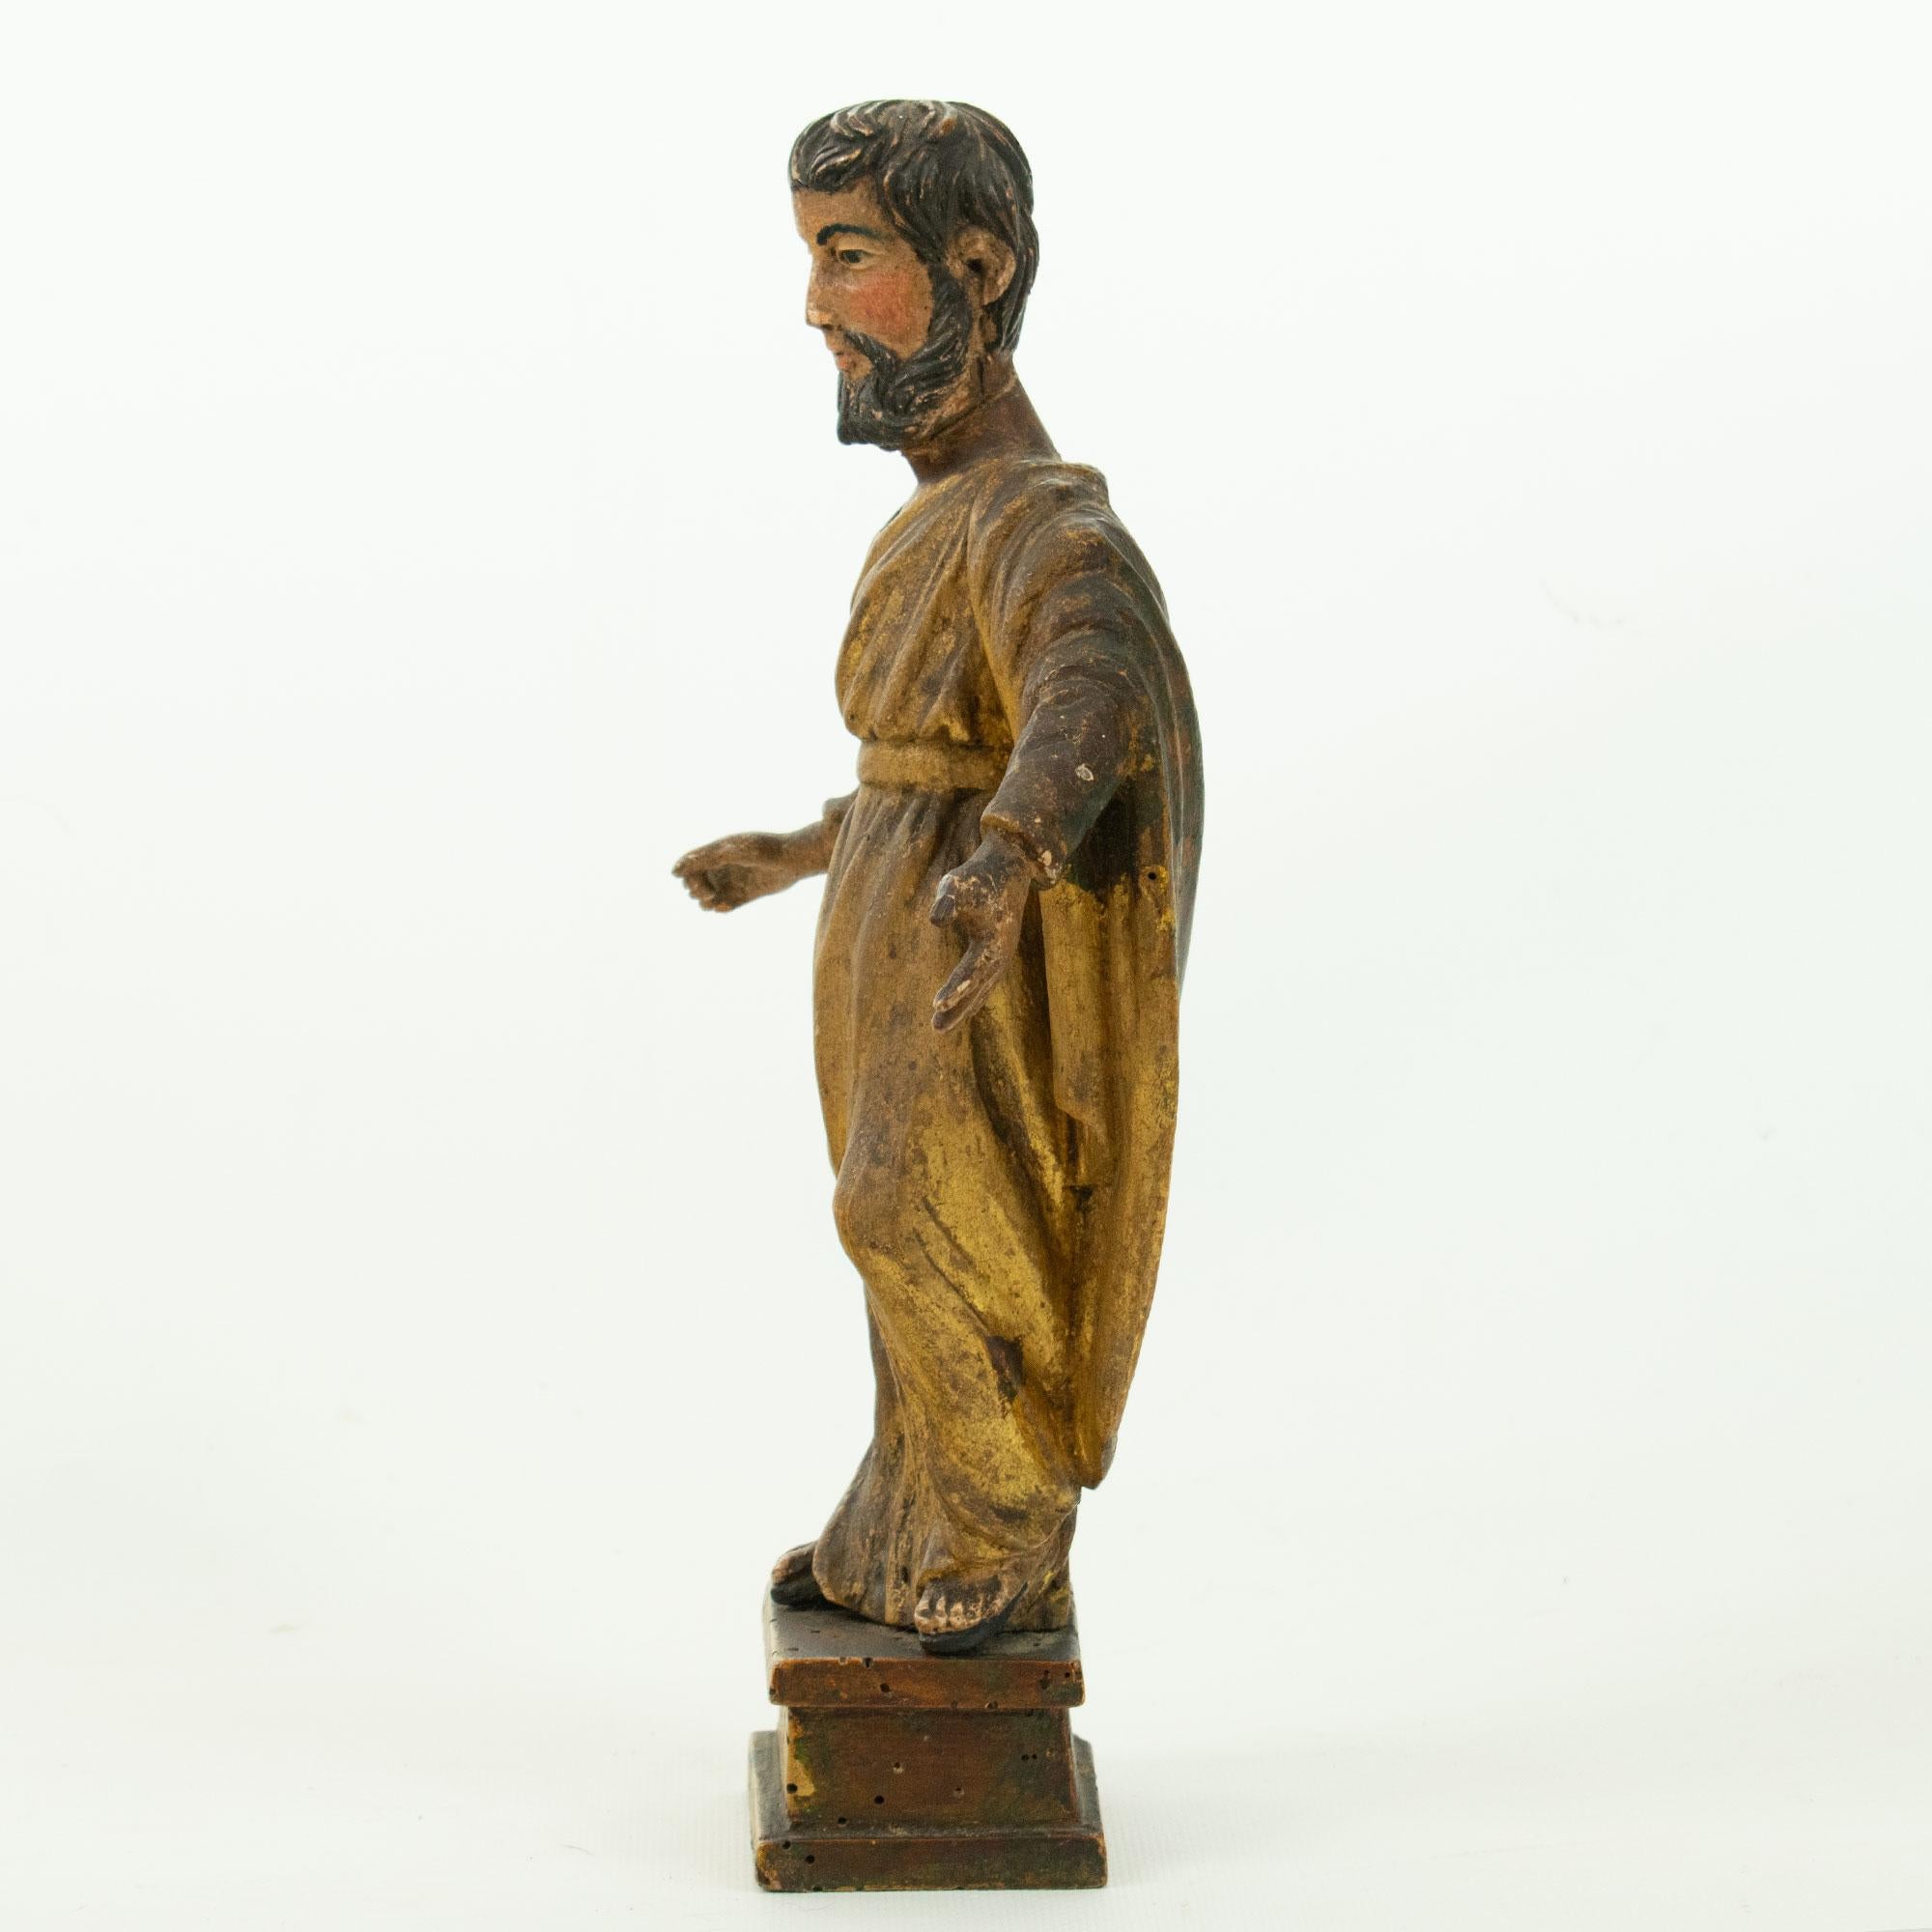 SAINT PAUL : Statuette en bois polychrome sculpté et doré,
Fin du 18e siècle.  Saint Paul, également connu sous le nom d'Apôtre Paul, était une figure importante du christianisme primitif et est souvent représenté dans diverses formes d'art